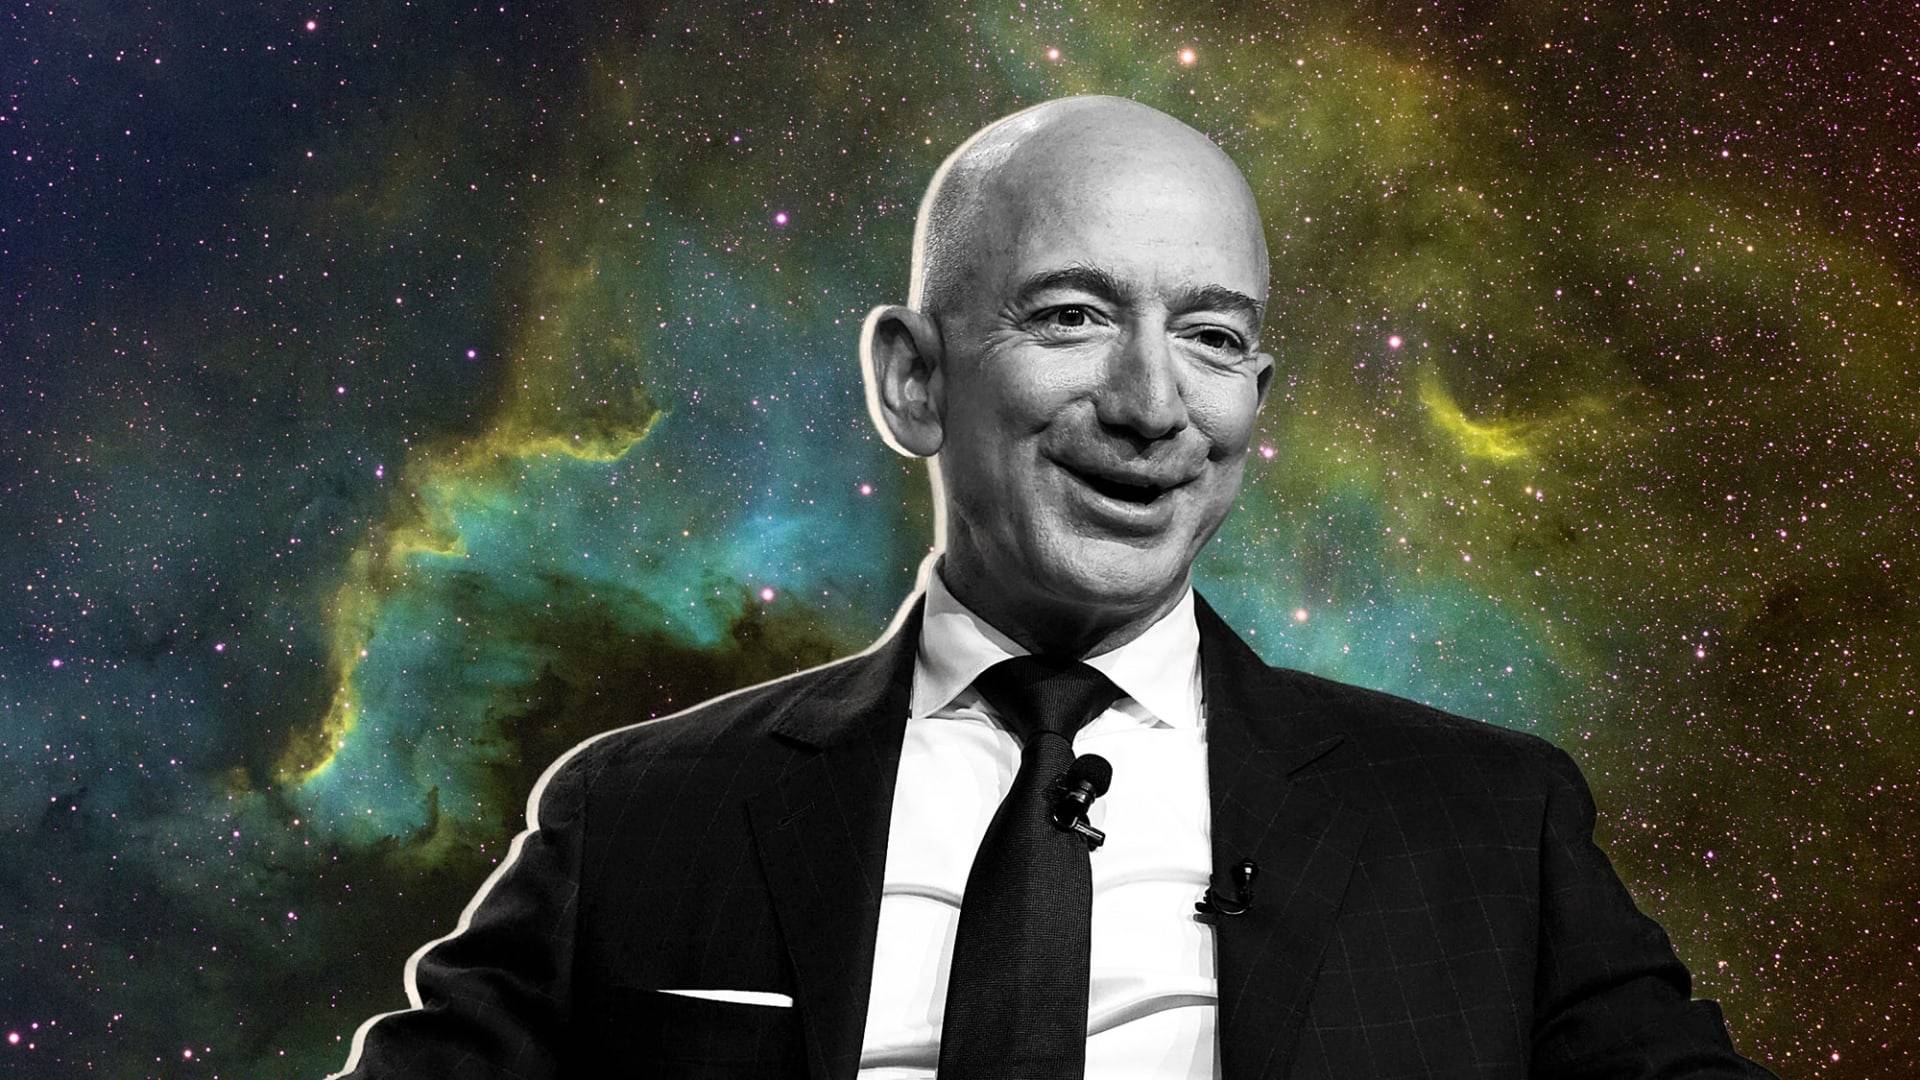 Inc. Magazine3 - È risolto, il fondatore di Amazon sarà il primo “parco spaziale”